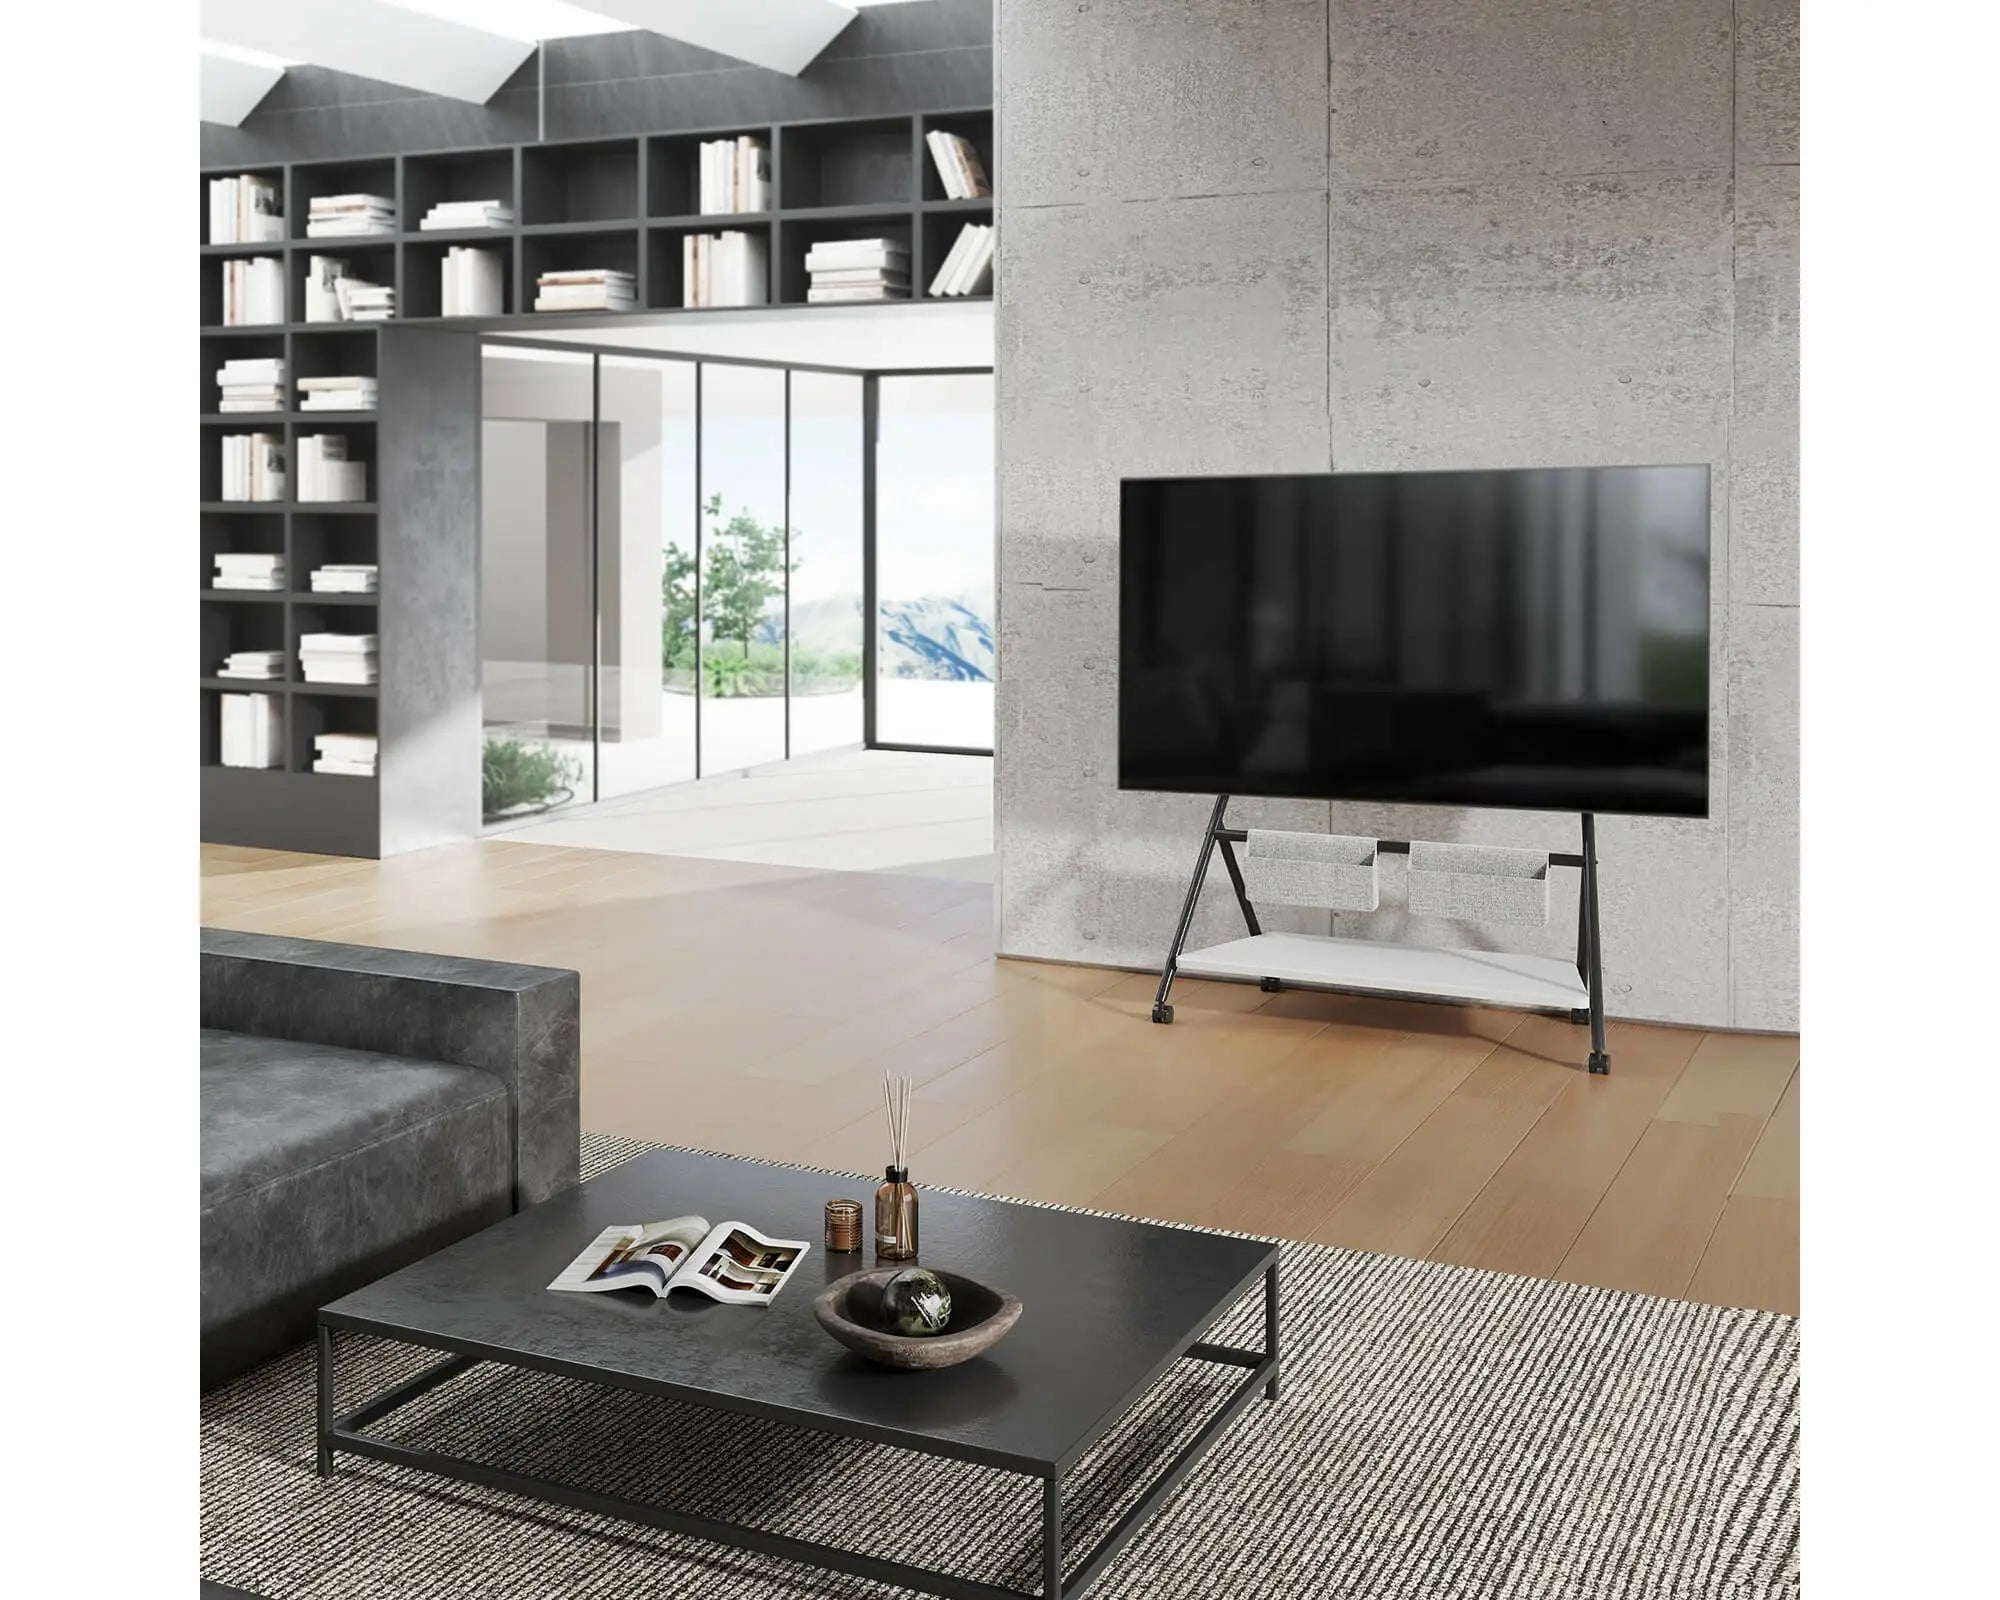 Vloer TV-standaard Collector-serie voor 65-88 inch